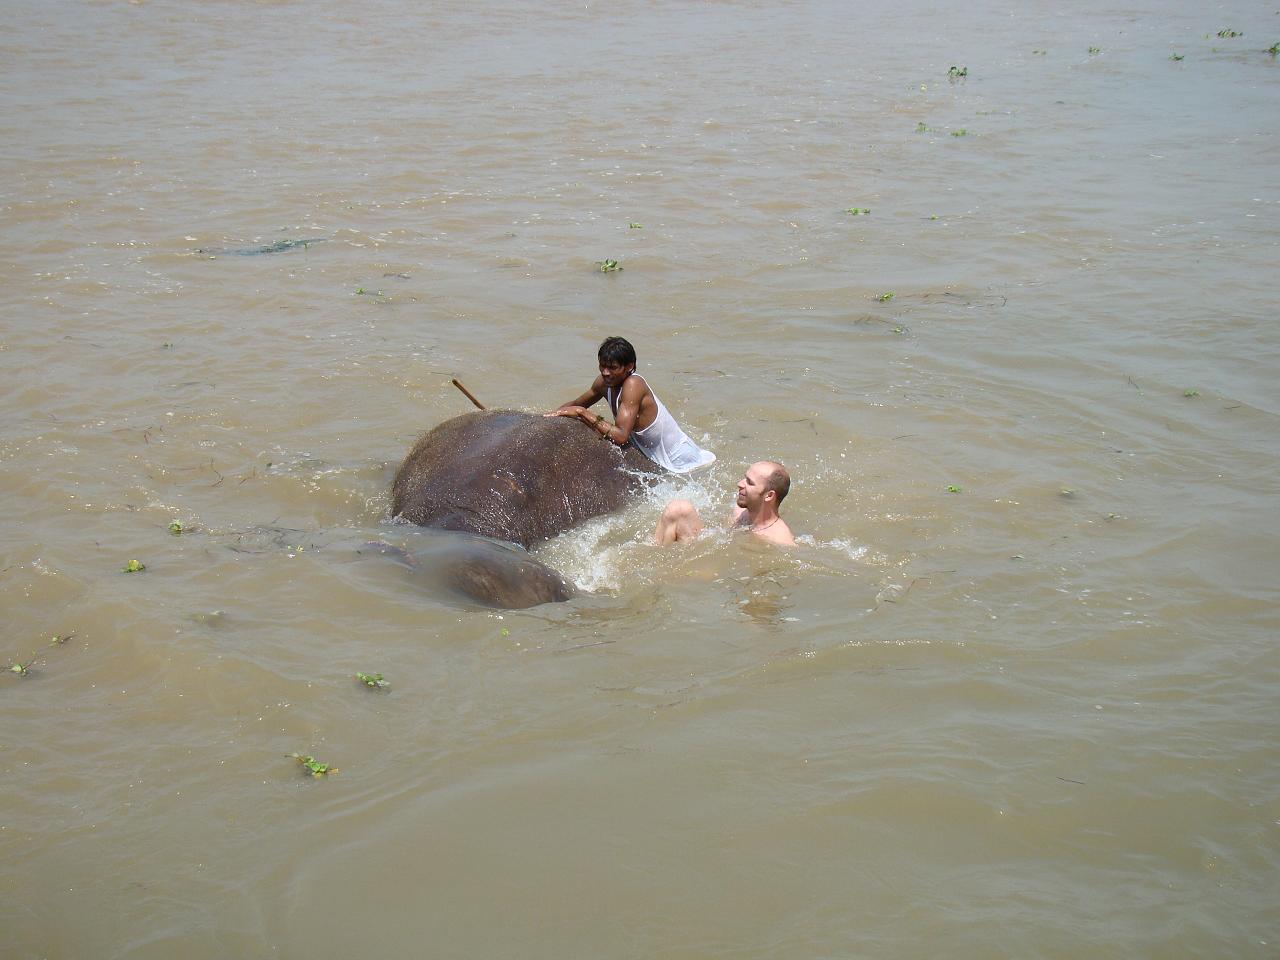 chitwan_elephants_bathing033.jpg